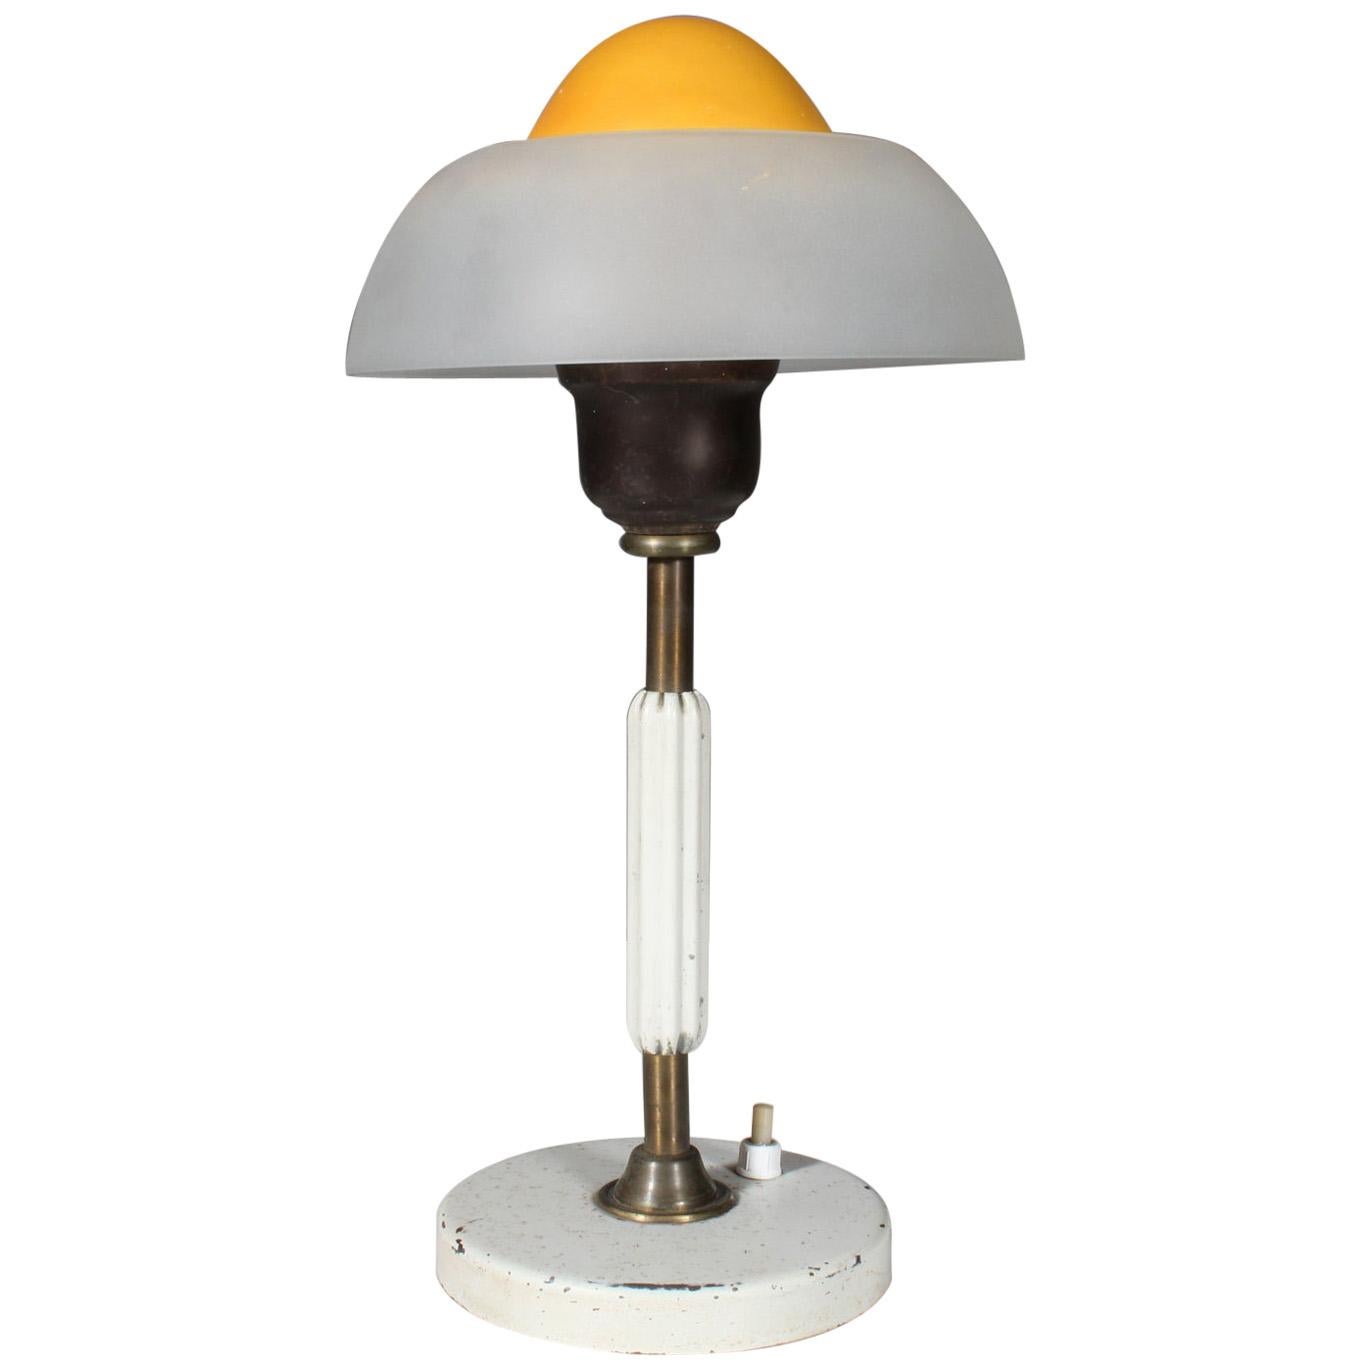 Fog & Mørup Table Lamp